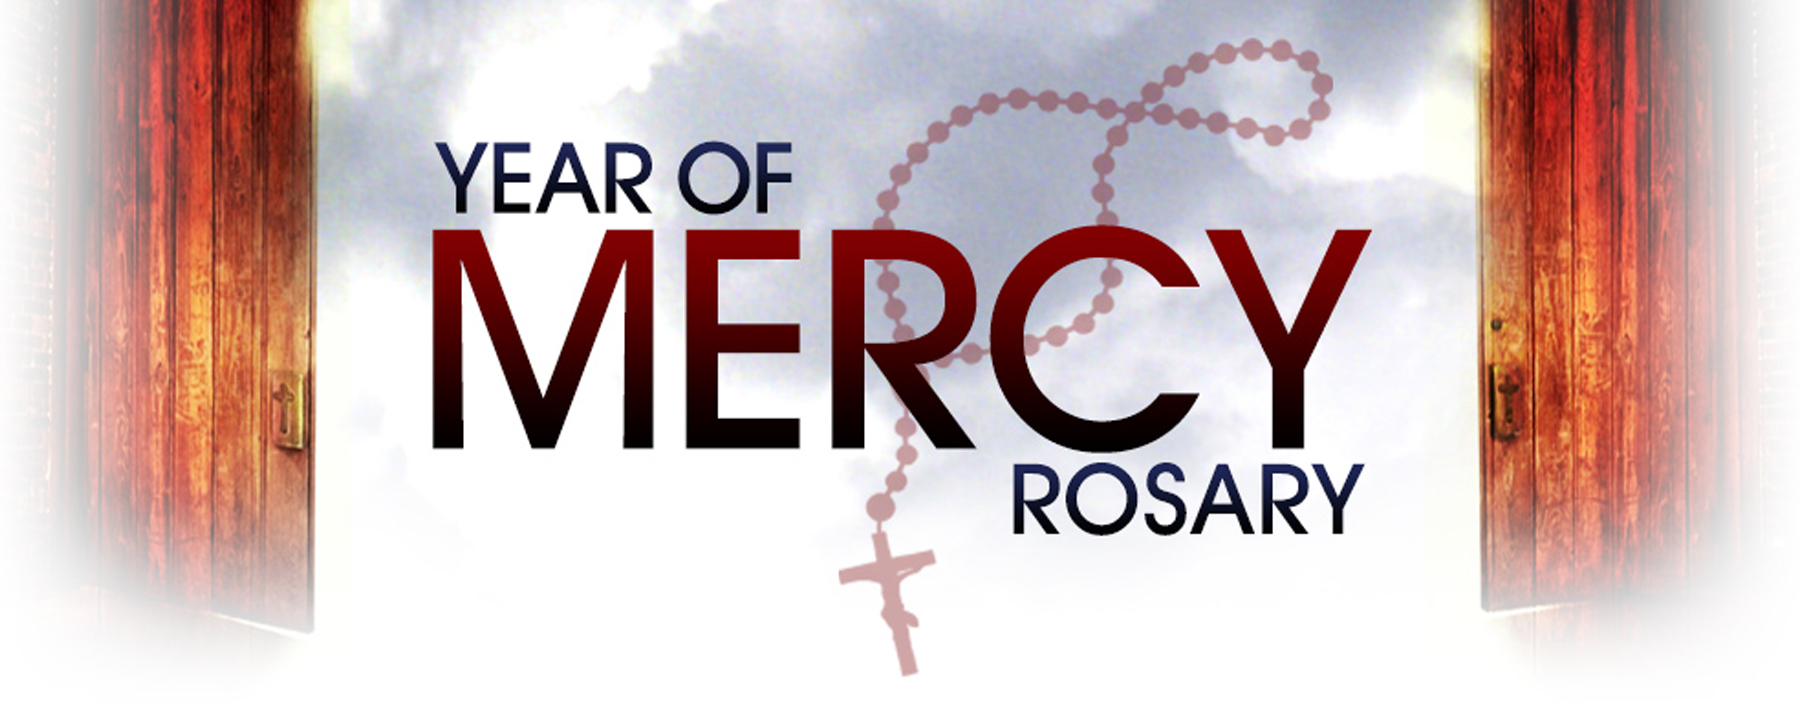 Year of Mercy Rosary